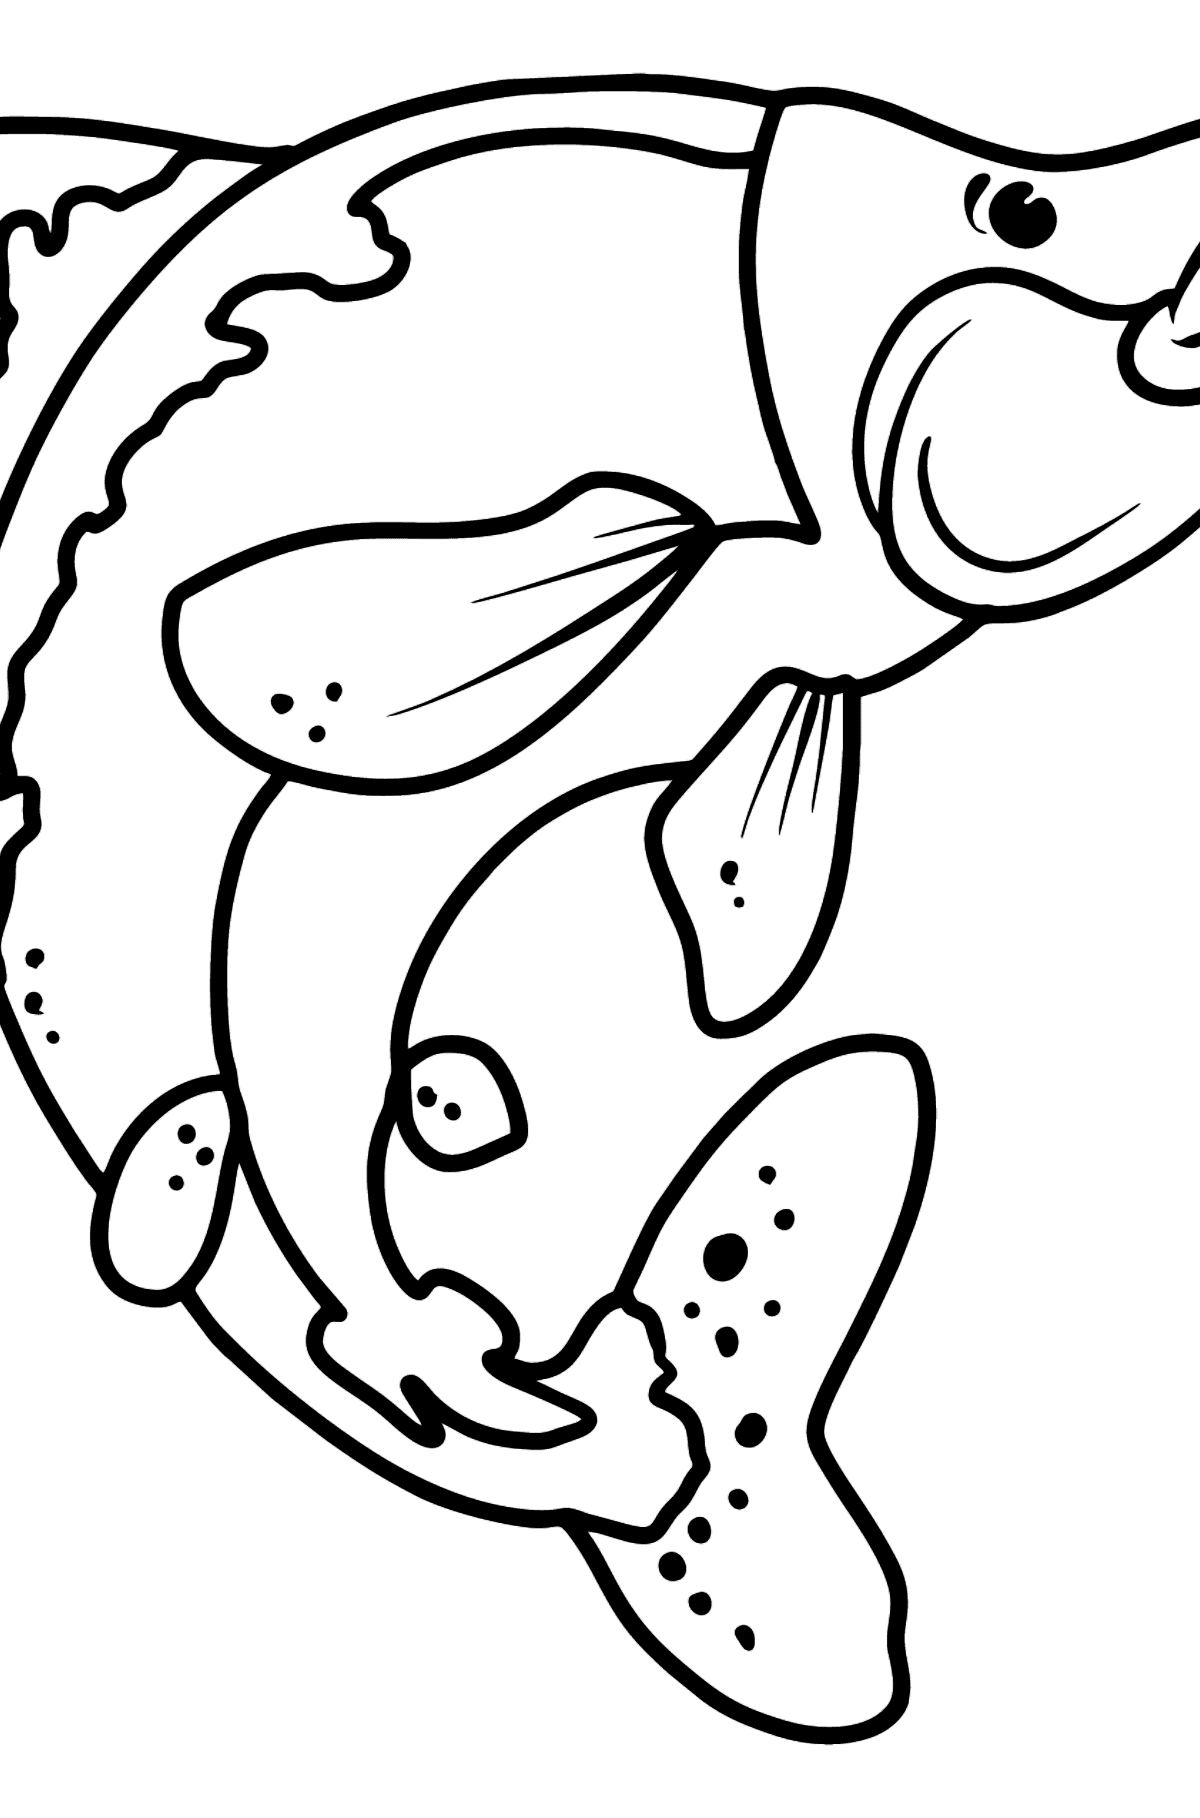 Dibujo de salmón para colorear - Dibujos para Colorear para Niños